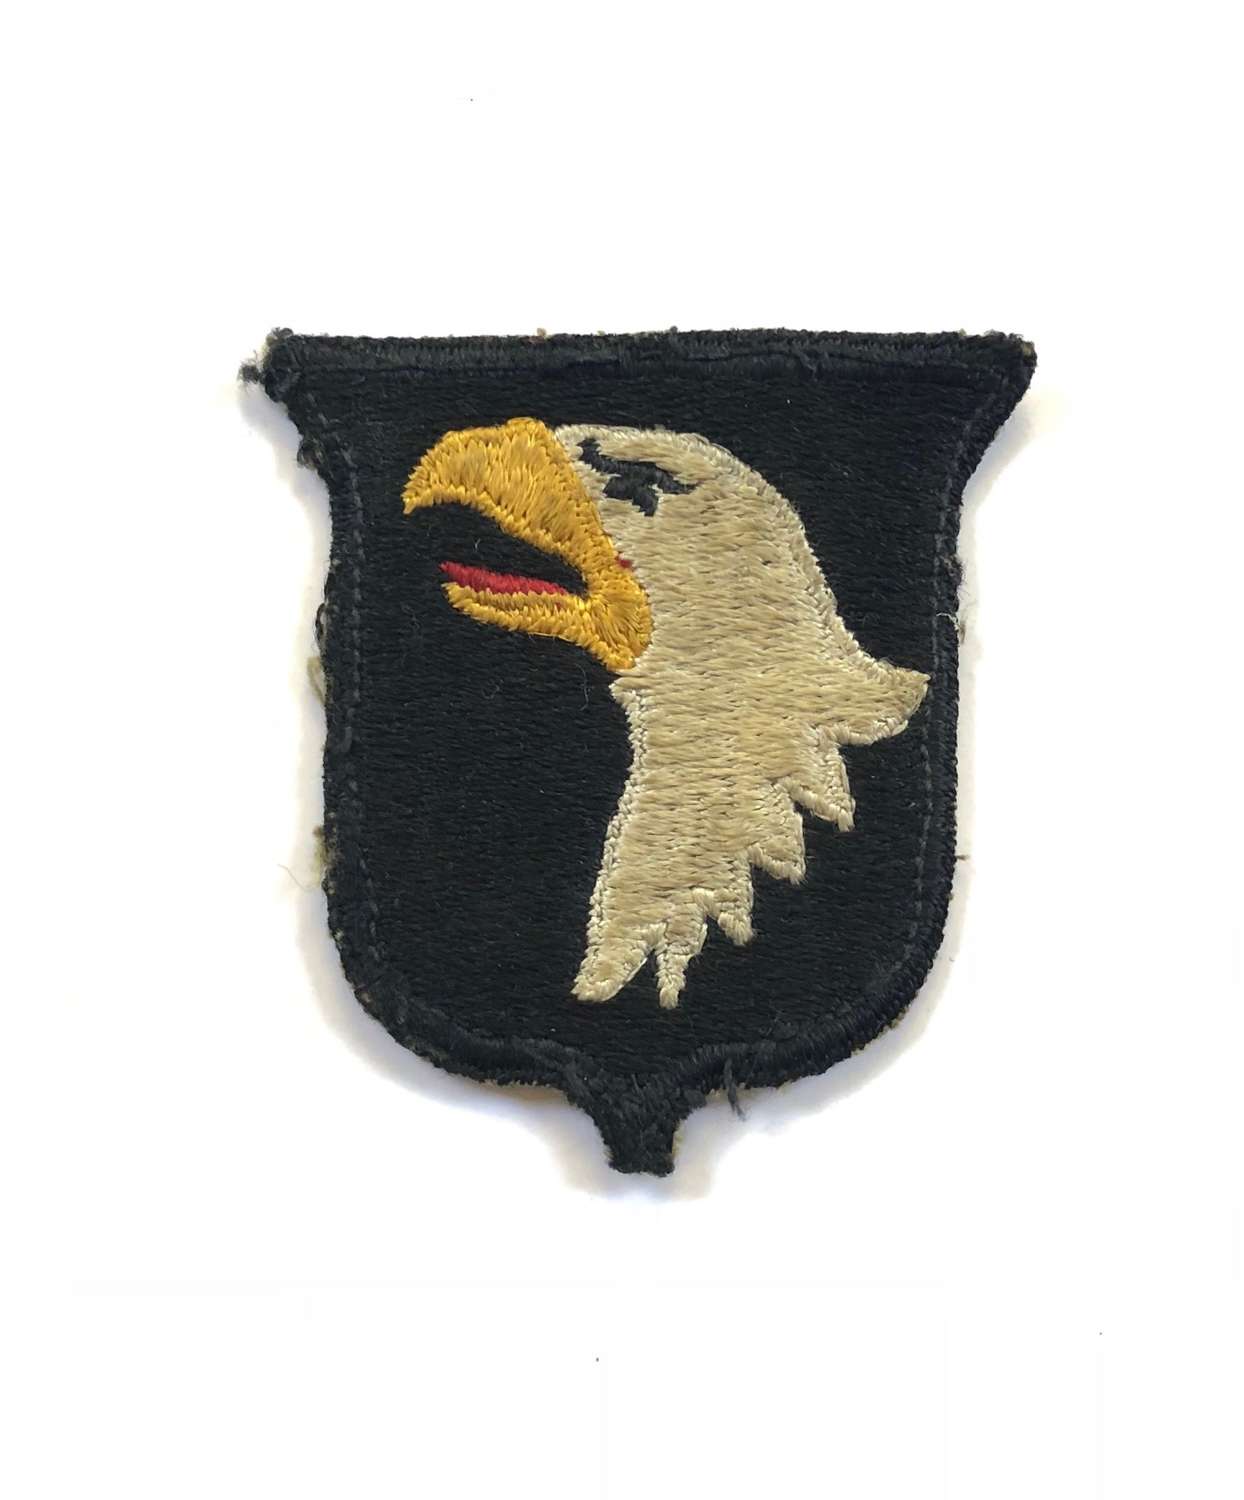 WW2 US 101st Airborne Division Badge.